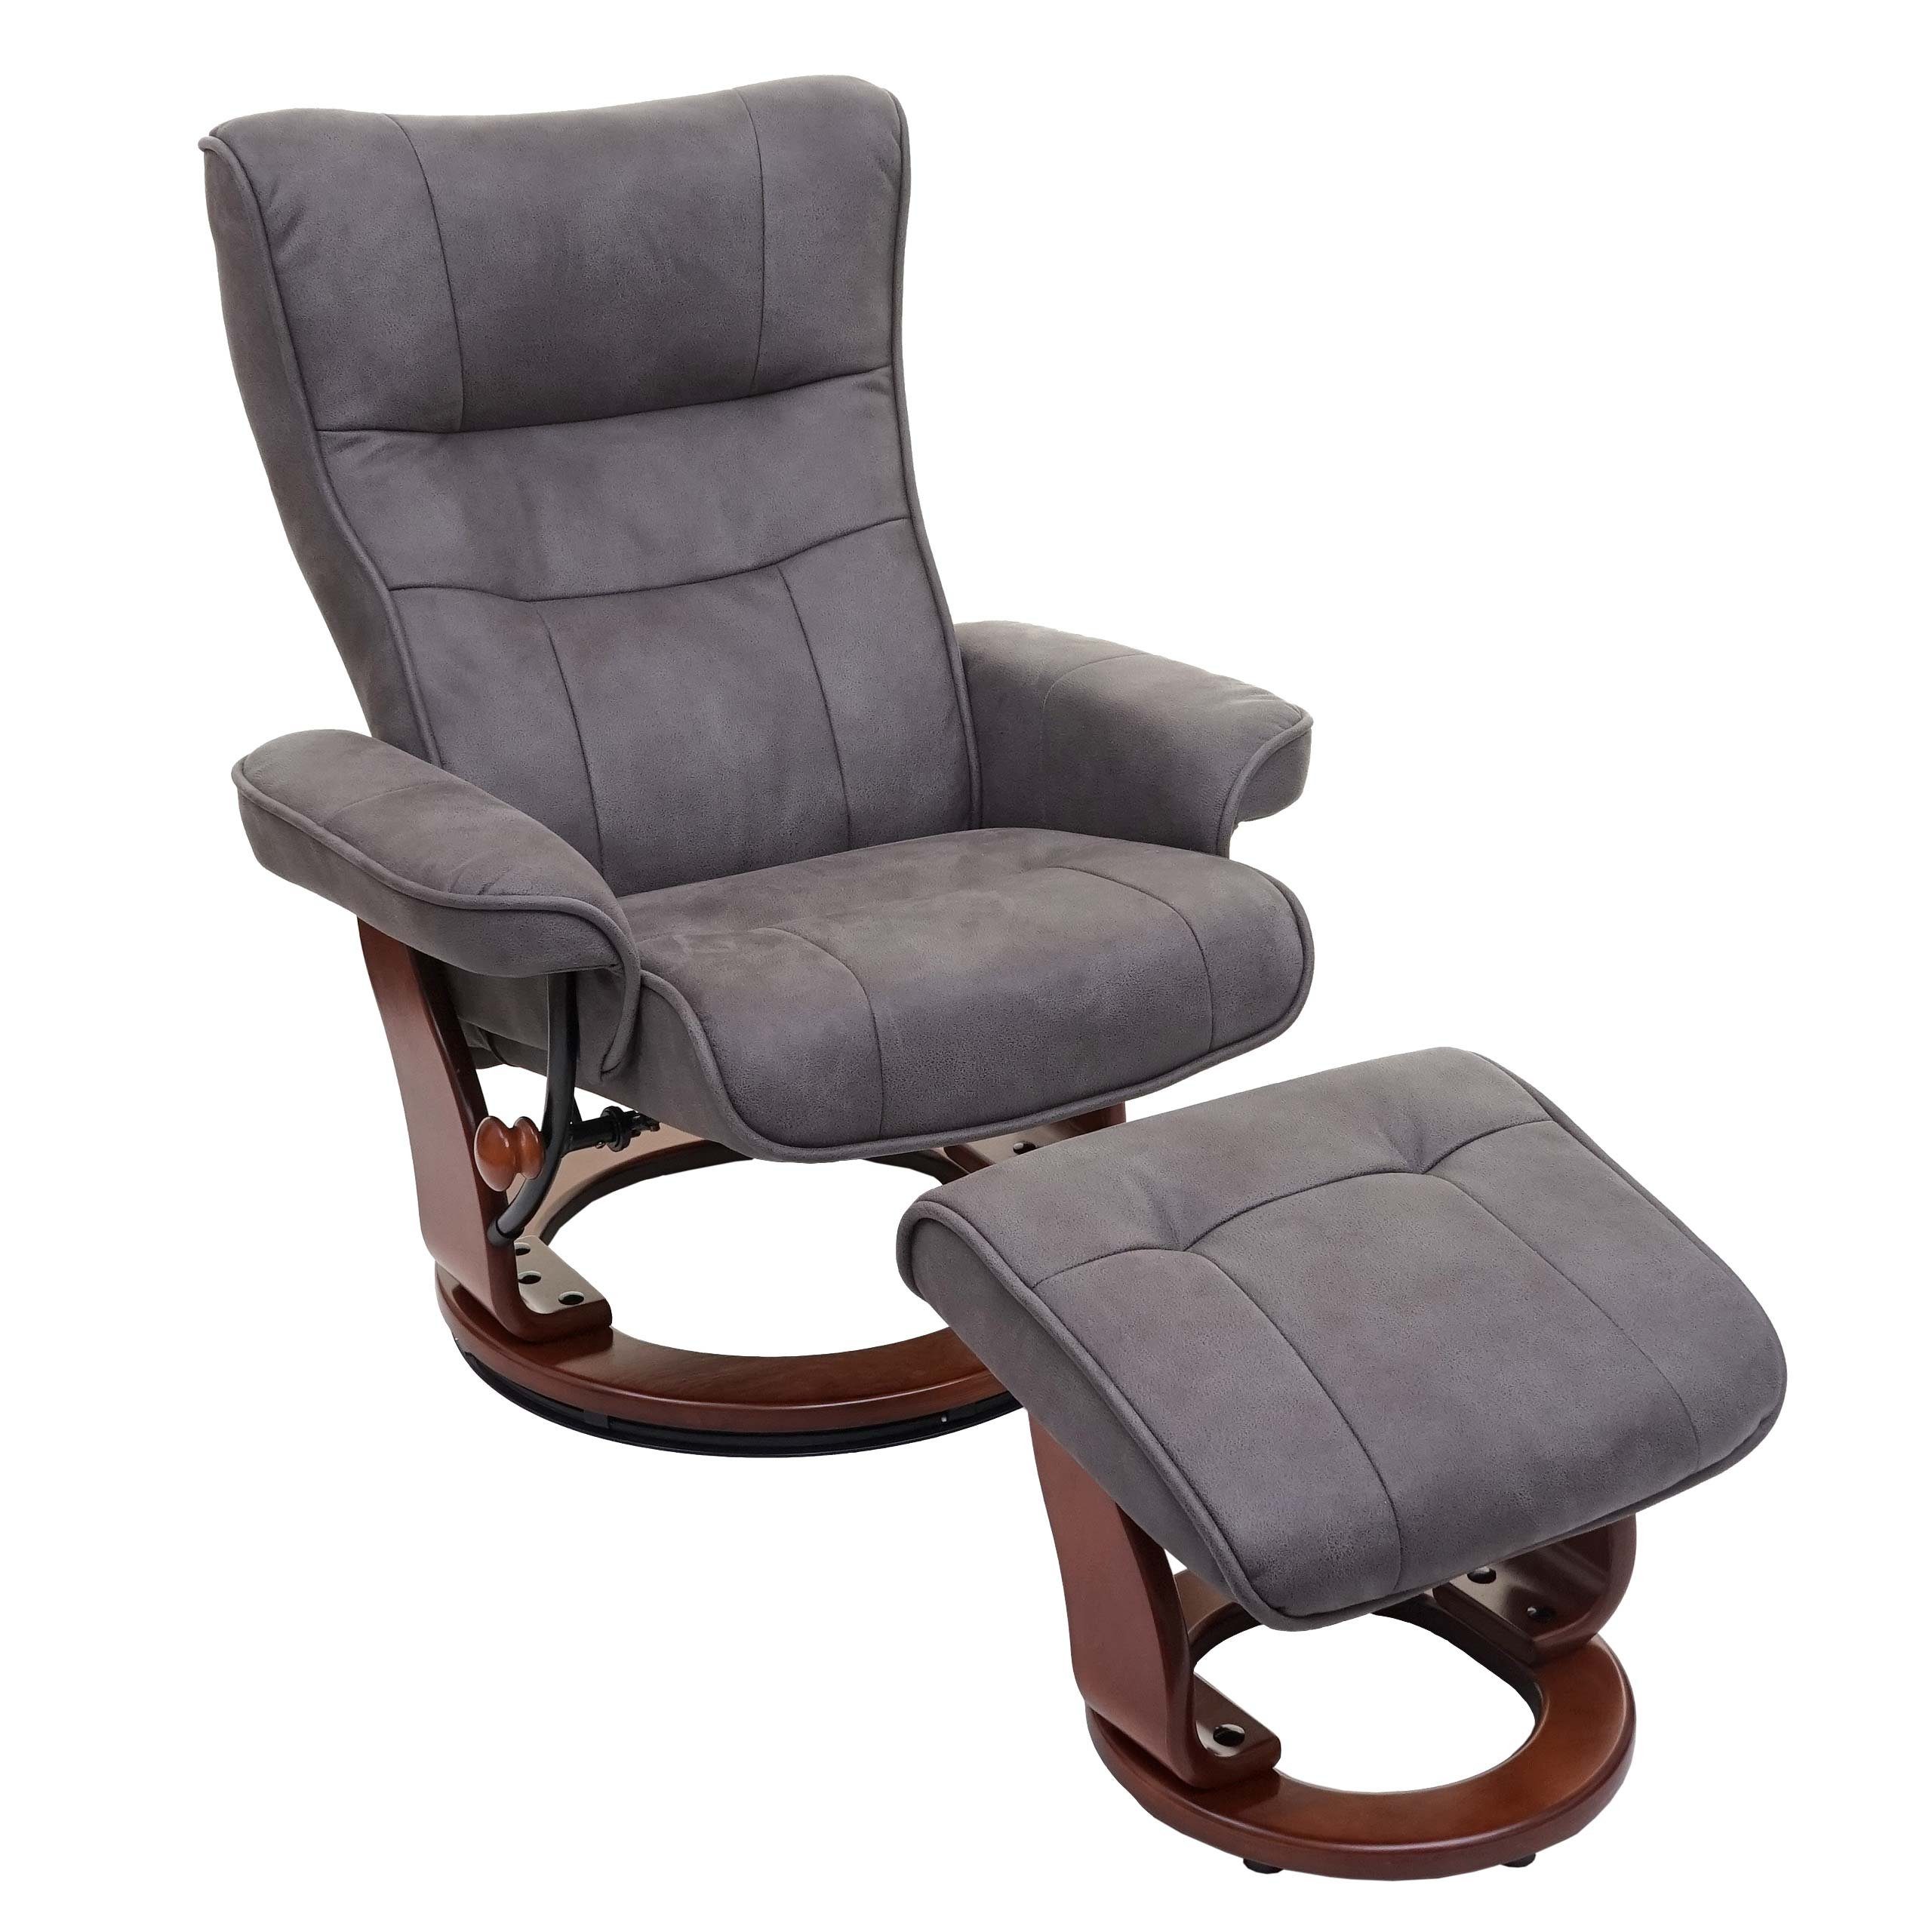 MCA furniture Relaxsessel Edmonton-S, Inkl. gepolstertem Fußhocker, Breite Armlehnen, Extradicke Polsterung dunkelgrau, walnussfarben